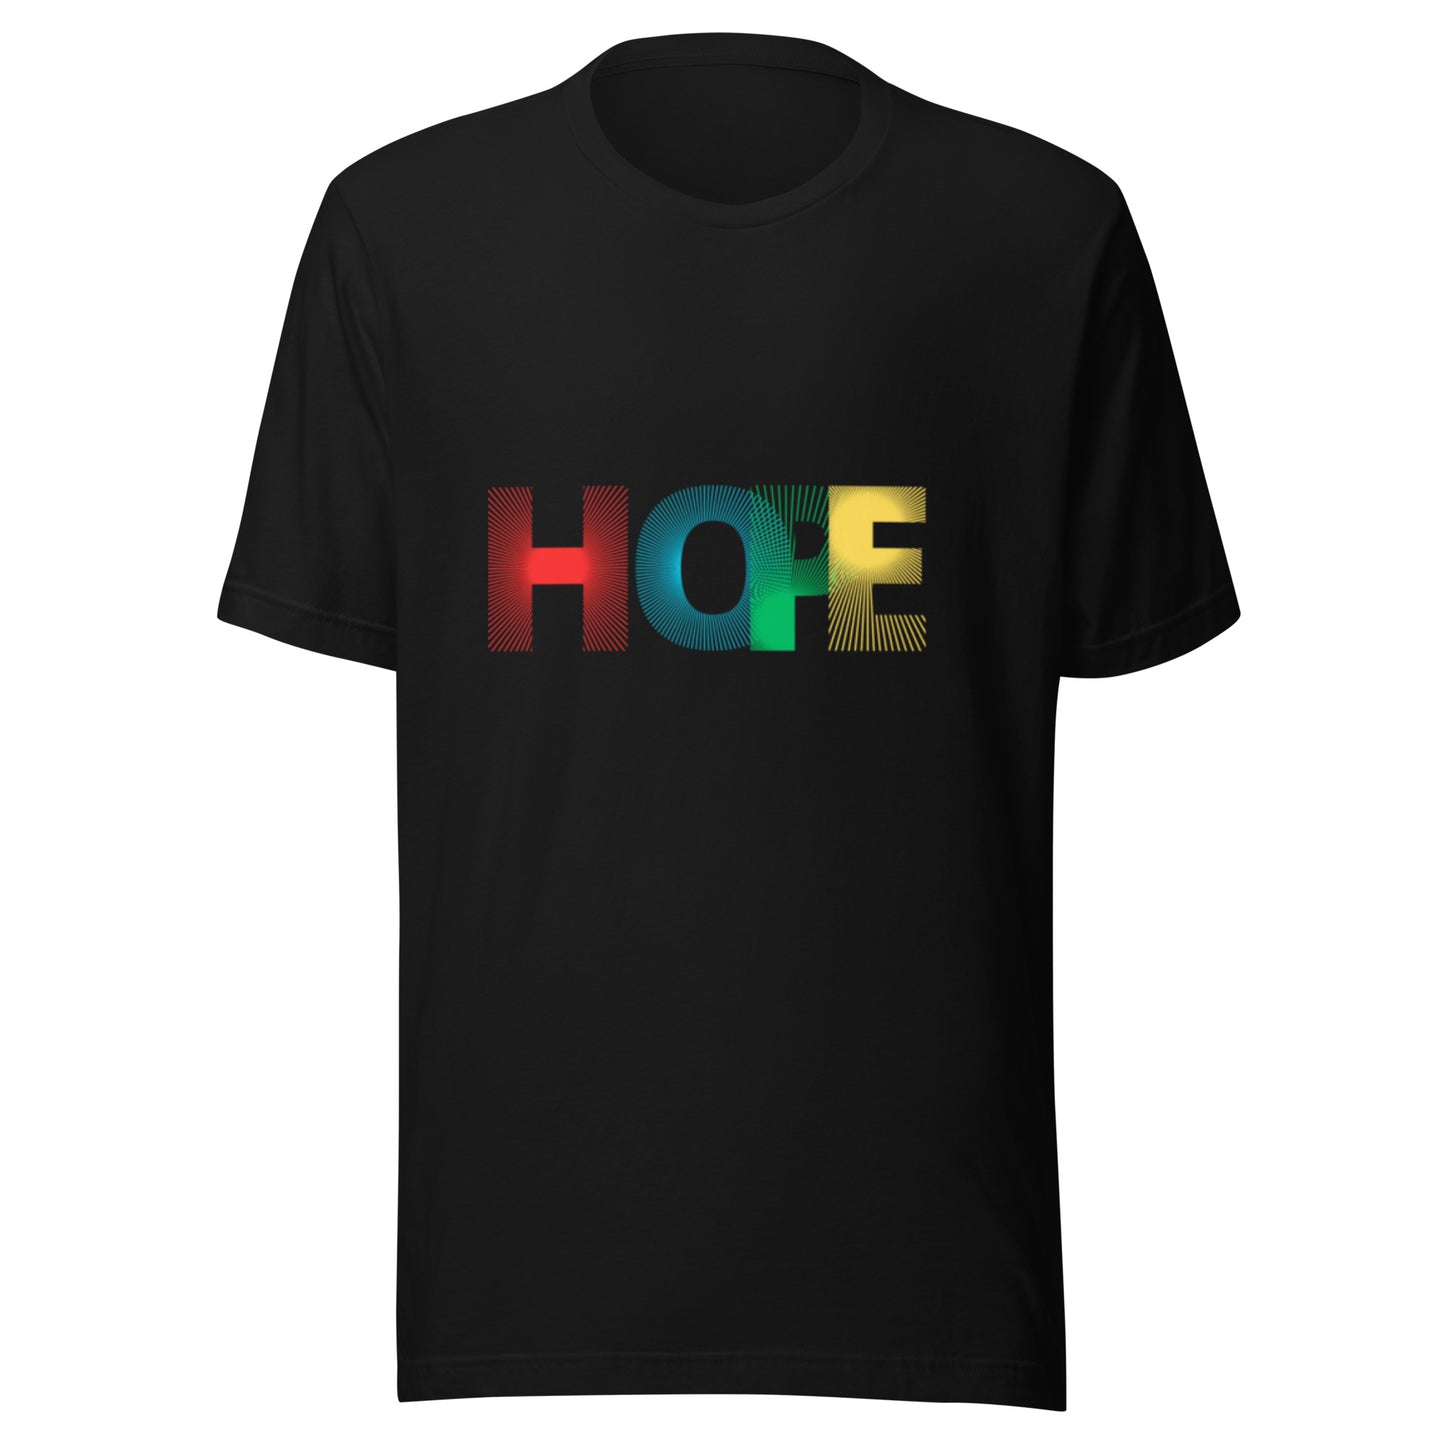 Hope with Stylish Design T-Shirt | Inspirational Unisex Tee